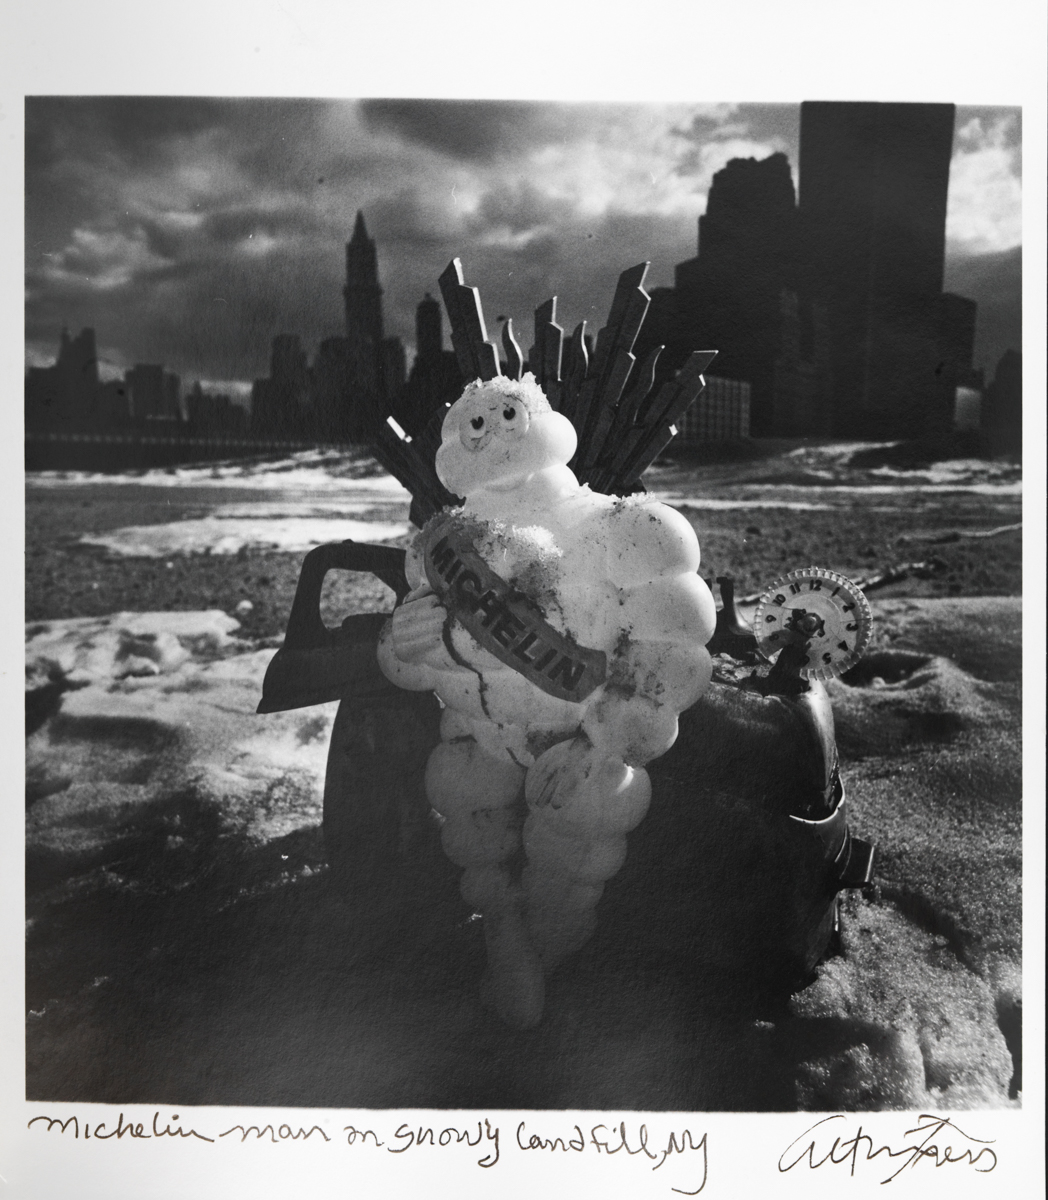 Michelin Man on Snowy Landfill, NY